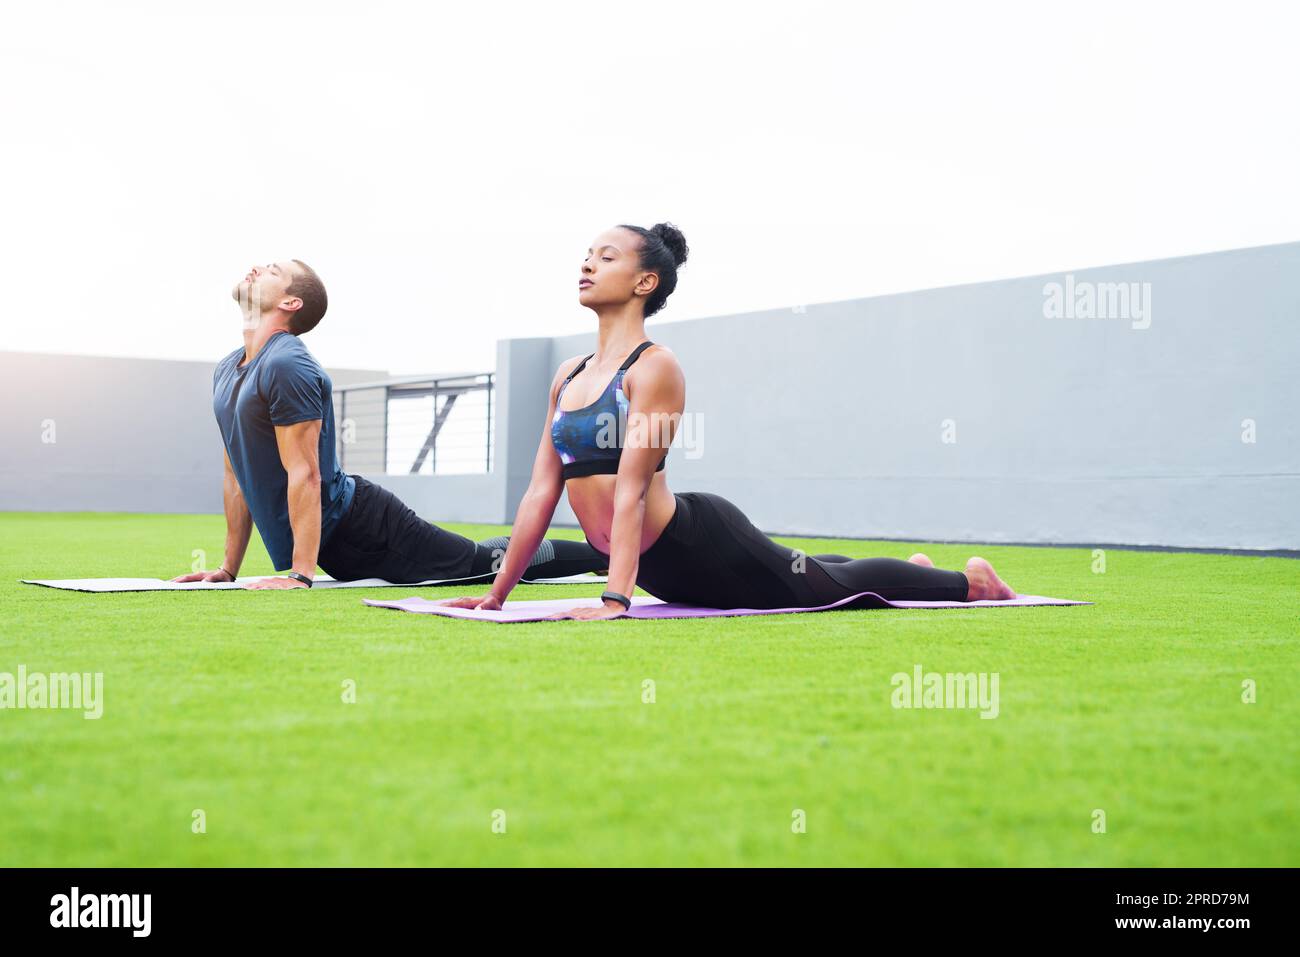 Wenn es ruhig ist, wird alles klar. Ein junger Mann und eine junge Frau praktizieren gemeinsam Yoga im Freien. Stockfoto